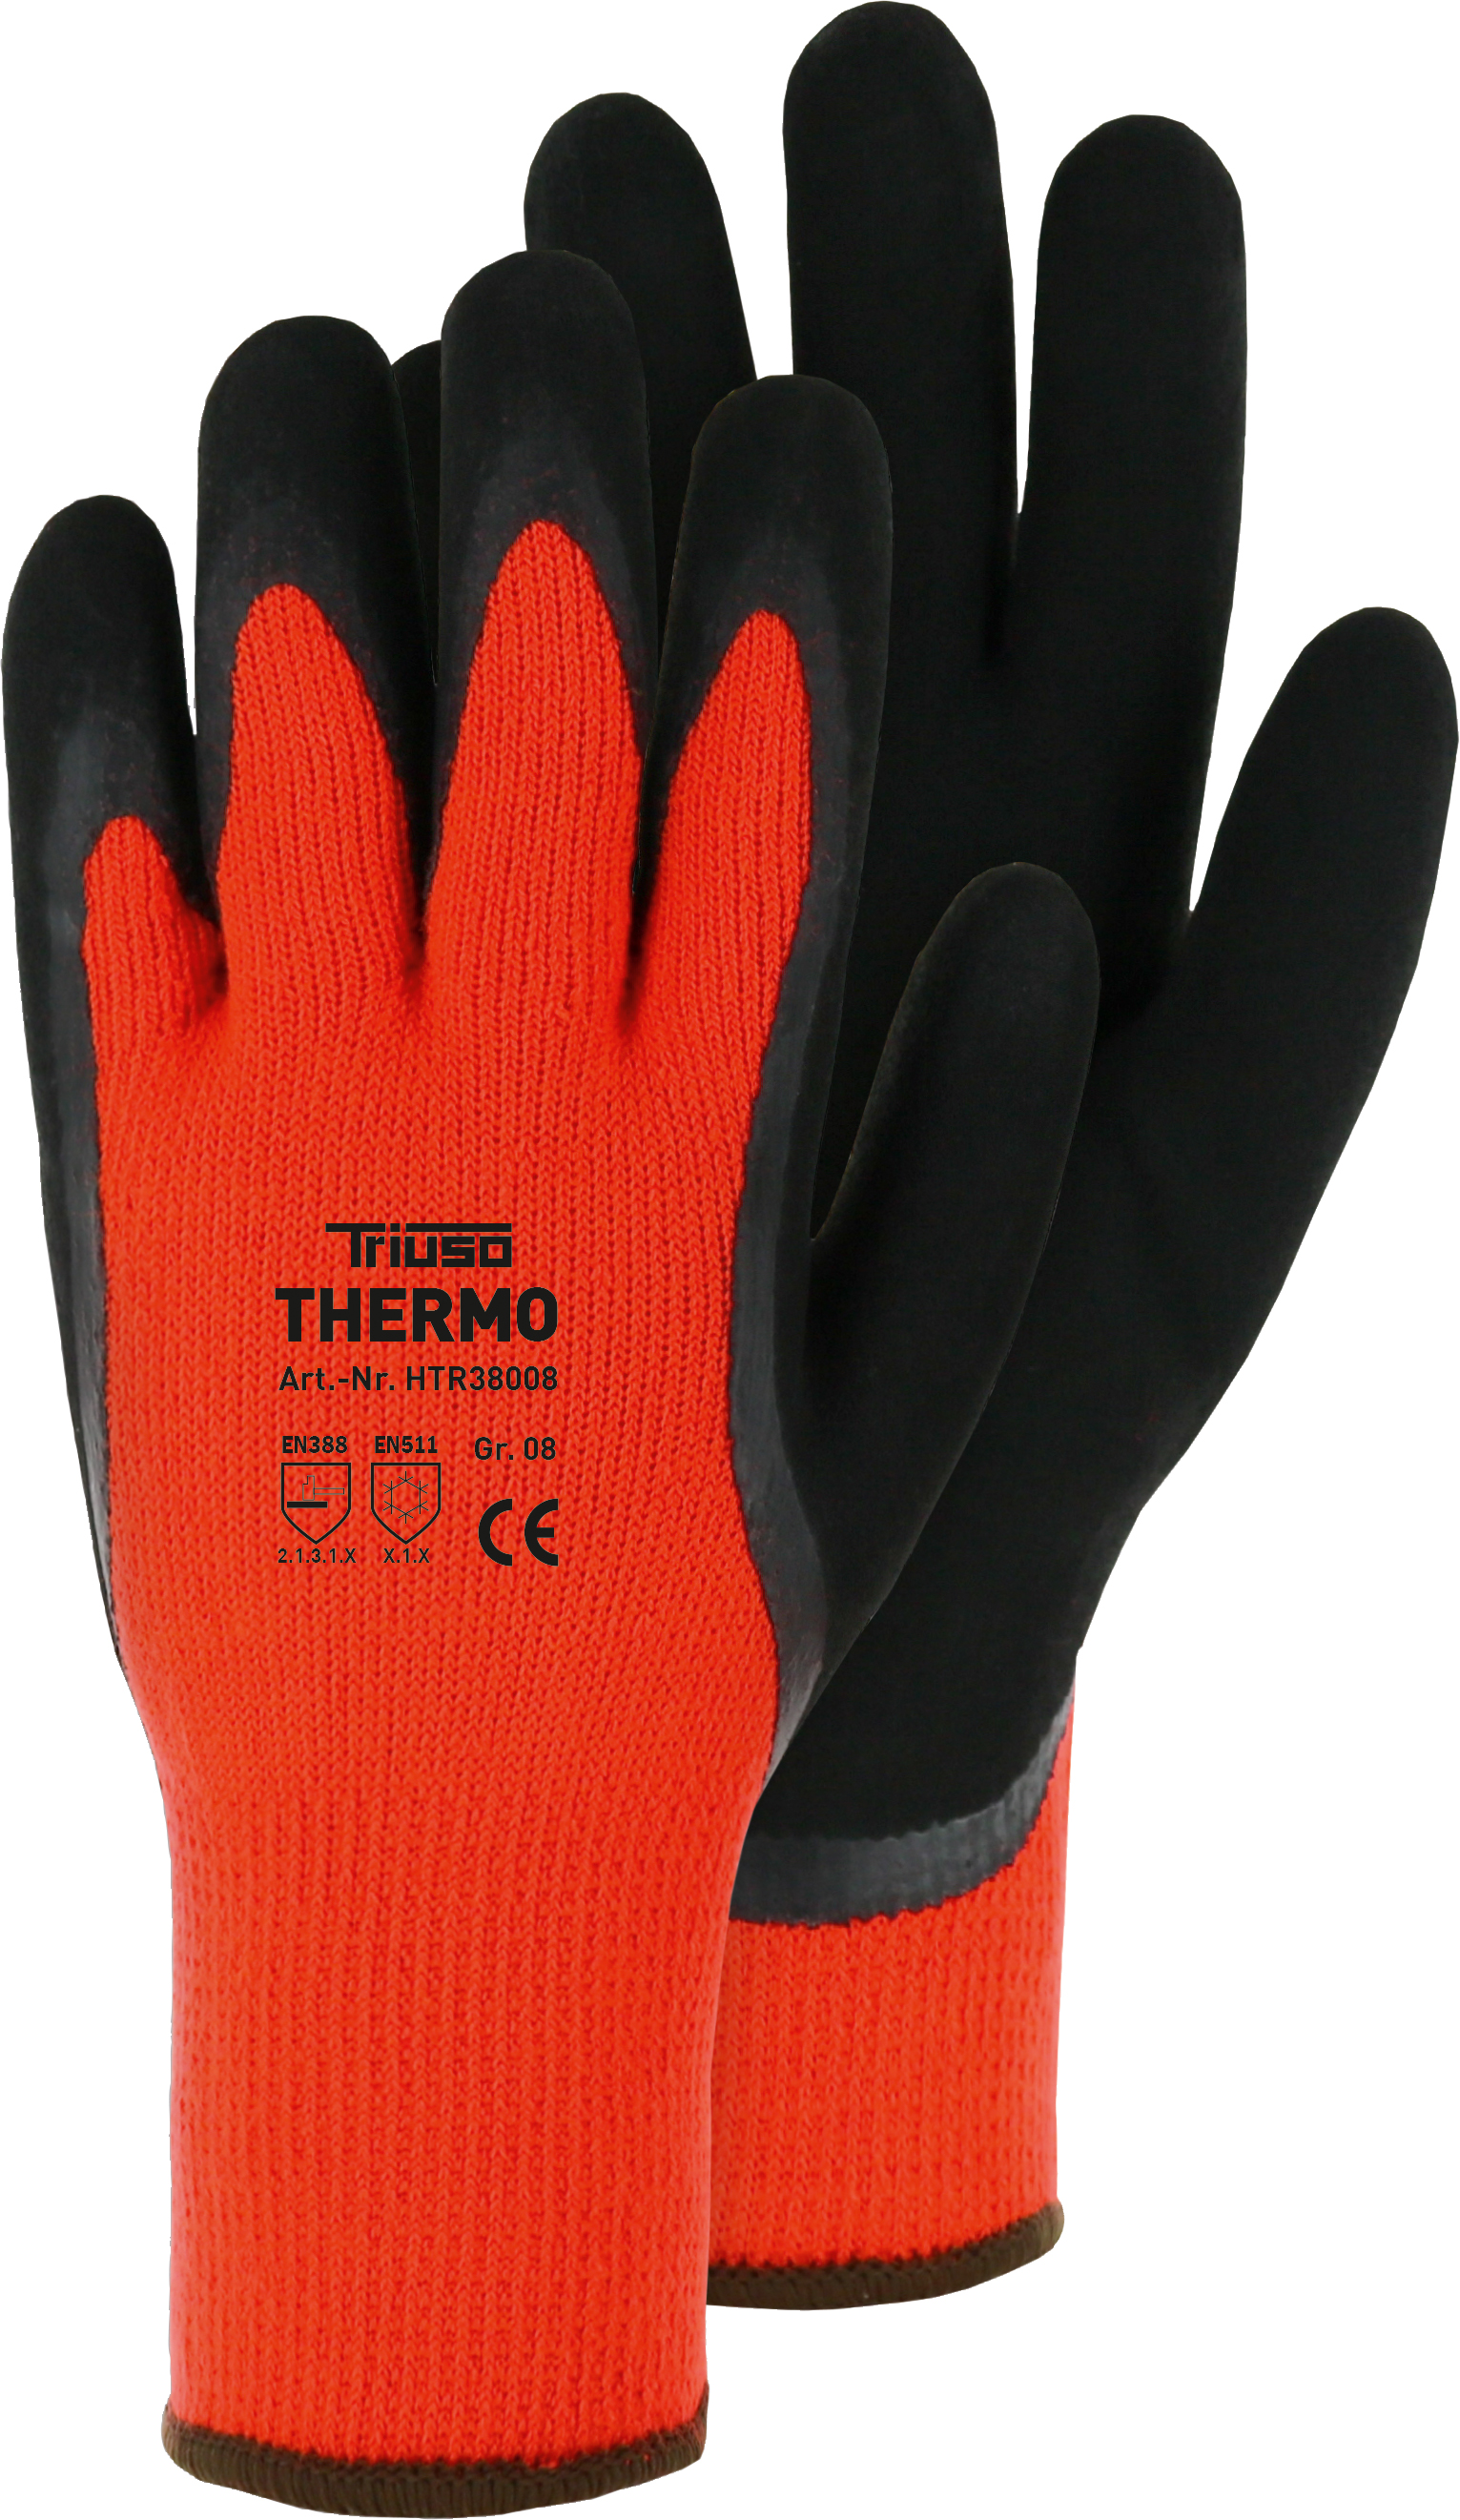 Triuso Thermo, orange Gr. 11